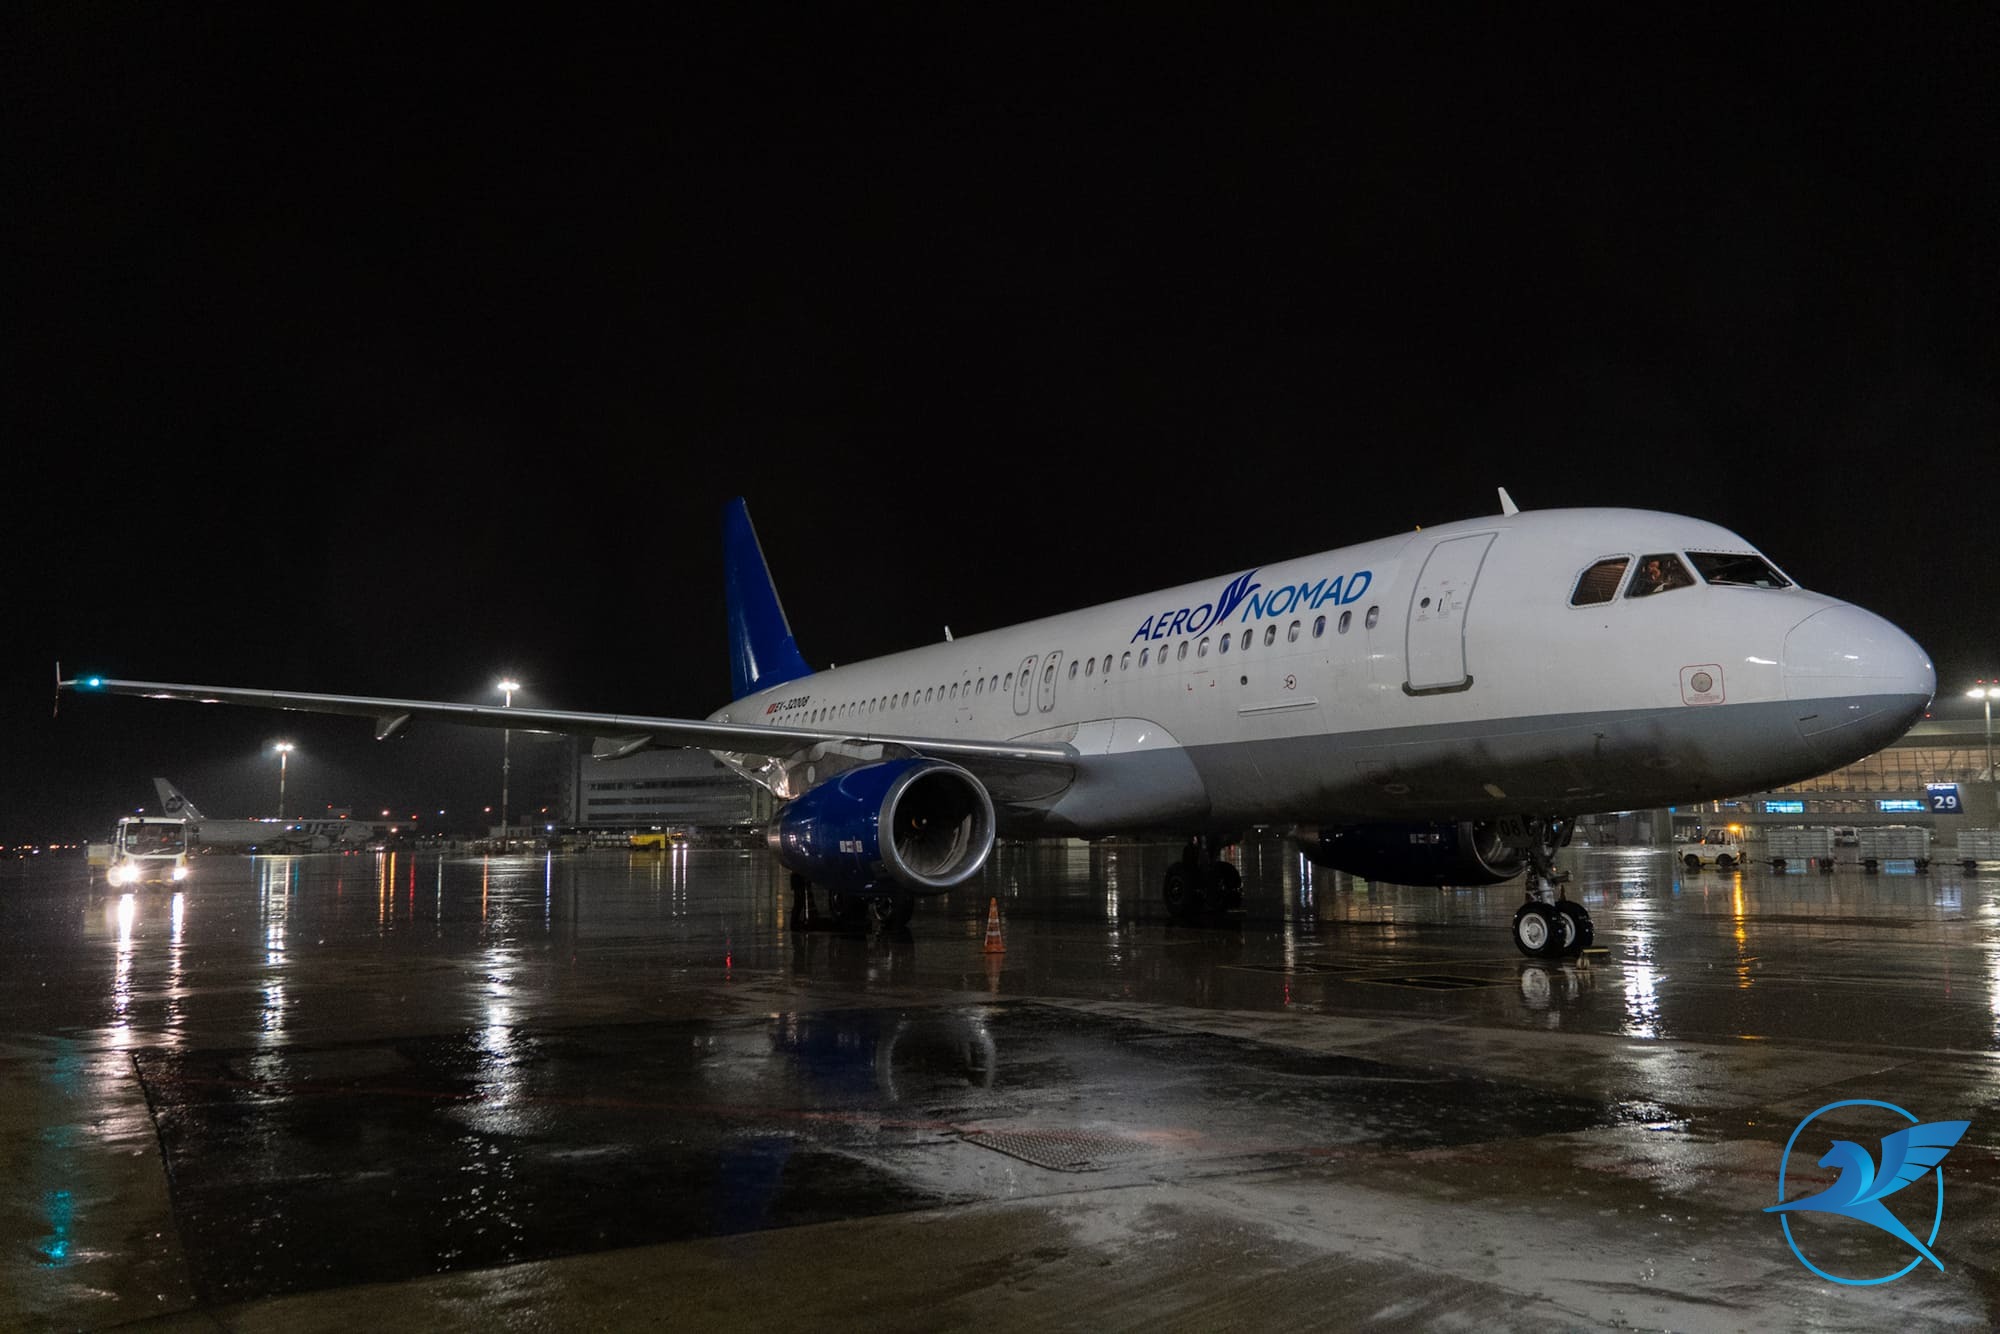 Авиакомпания Aero Nomad Airlines расширяет маршрутную сеть из аэропорта Внуково | Международный аэропорт Внуково